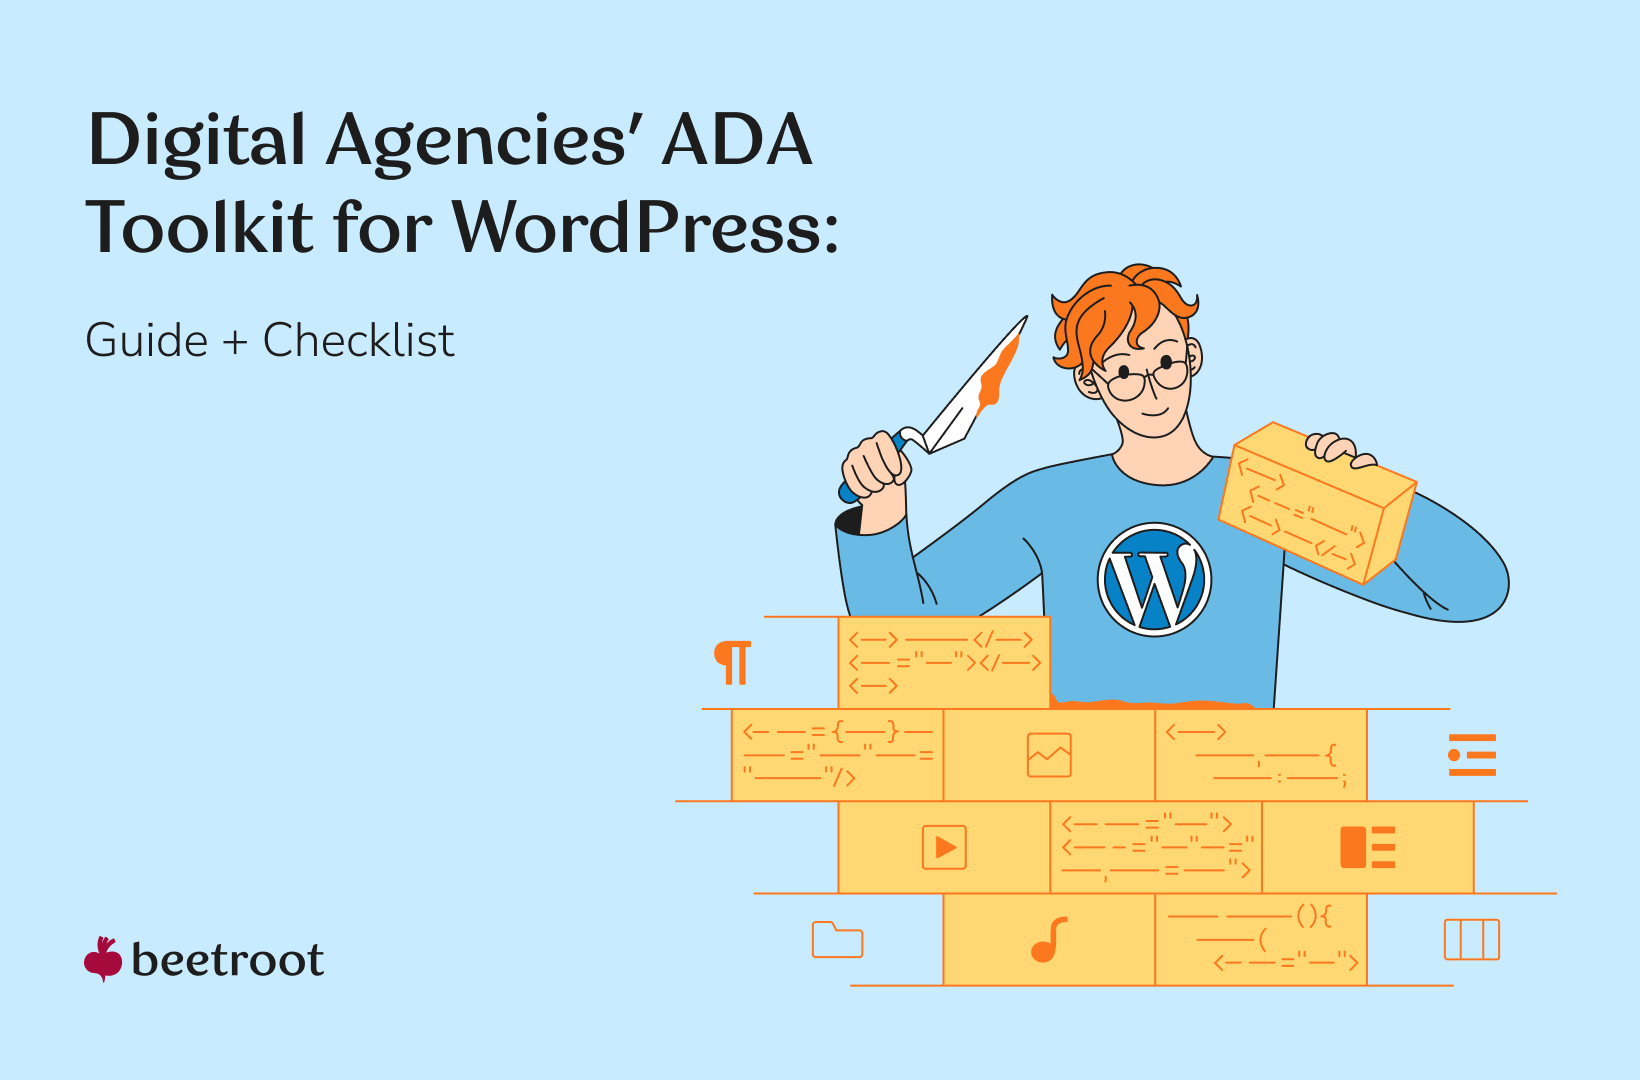 Digital agencies' ADA toolkit for WordPress